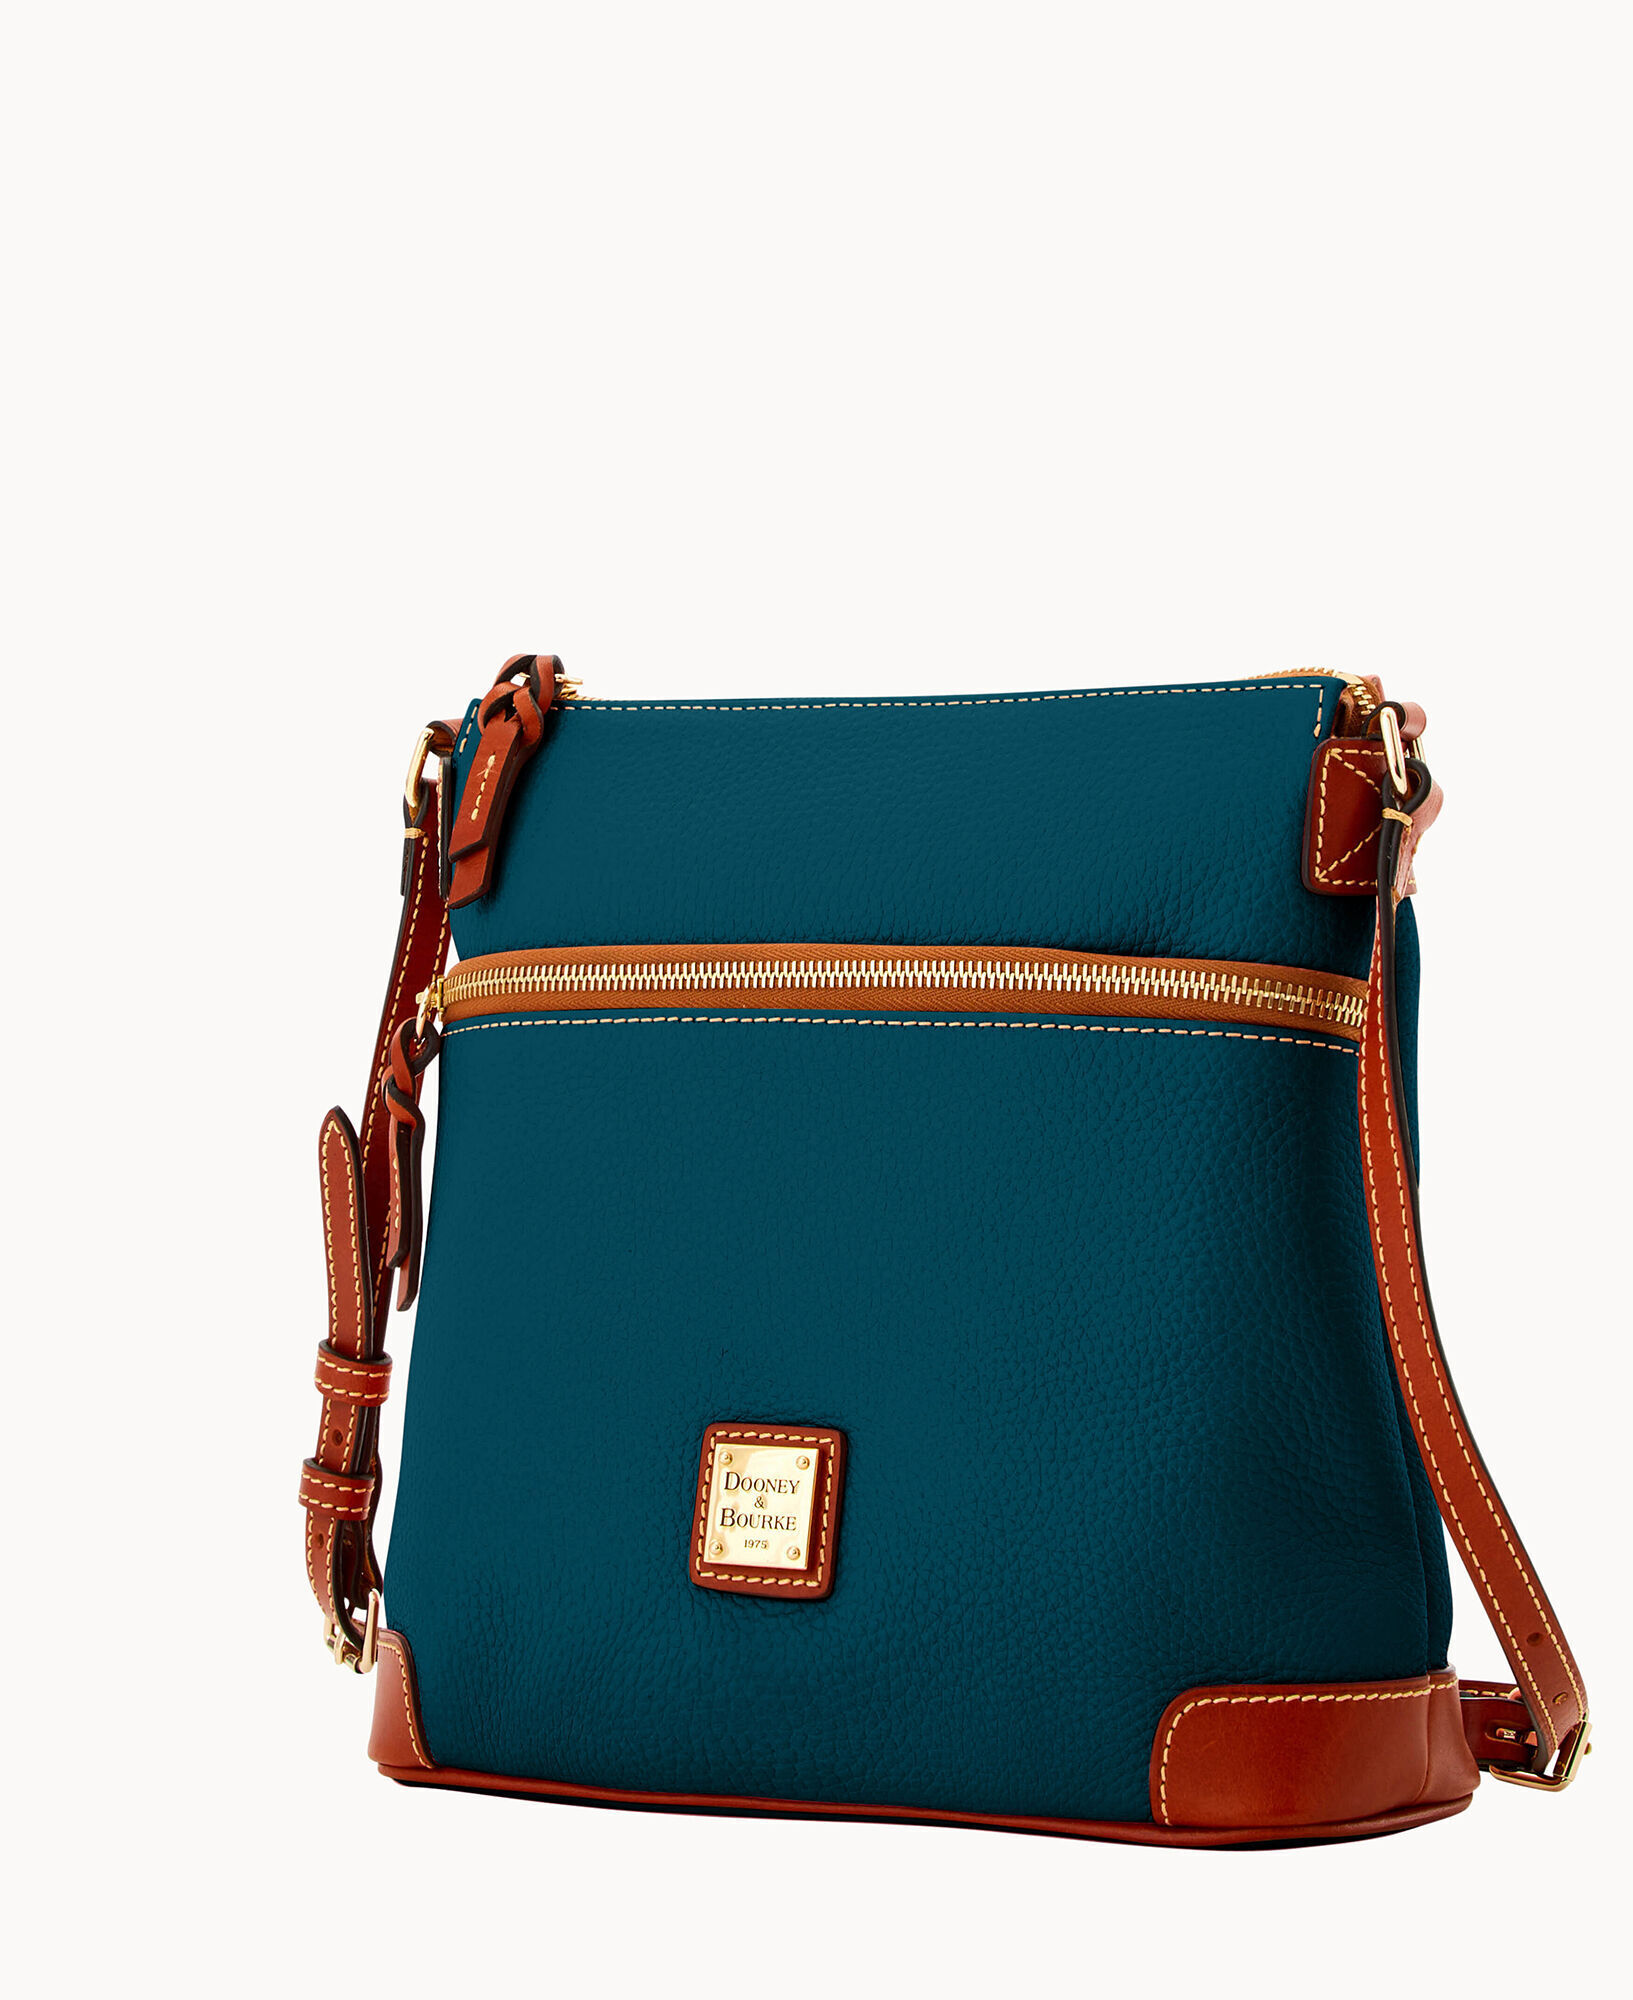 Dooney & Bourke Pebble Grain Scarlett Crossbody - ShopStyle Shoulder Bags